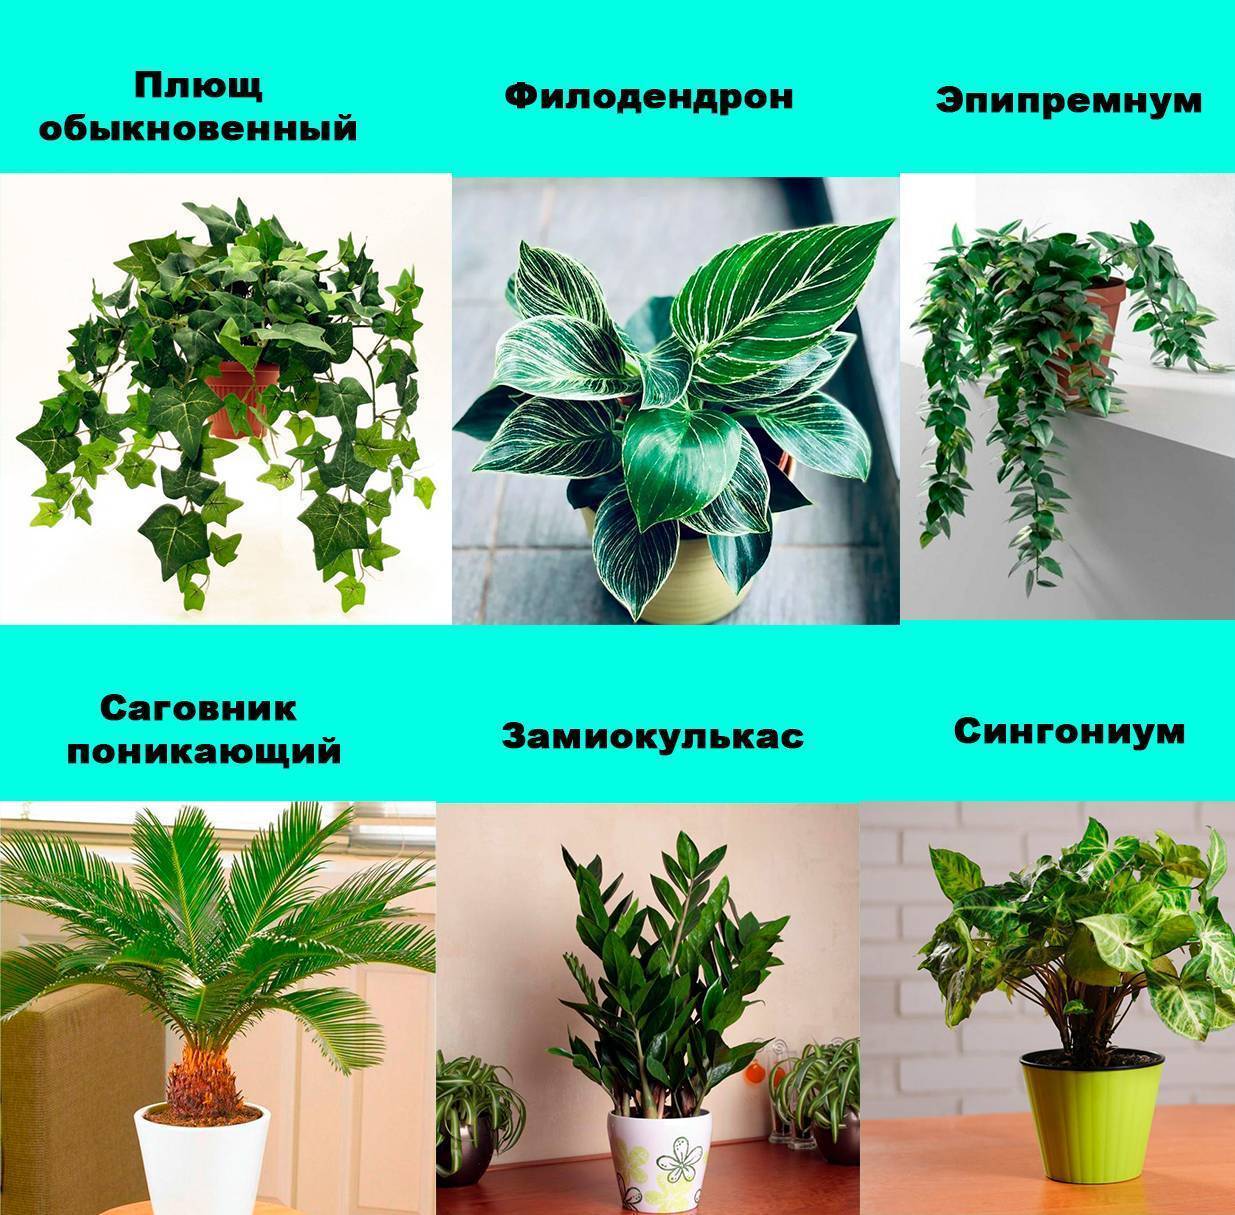 Ядовитые комнатные растения: фото, названия и краткие описания